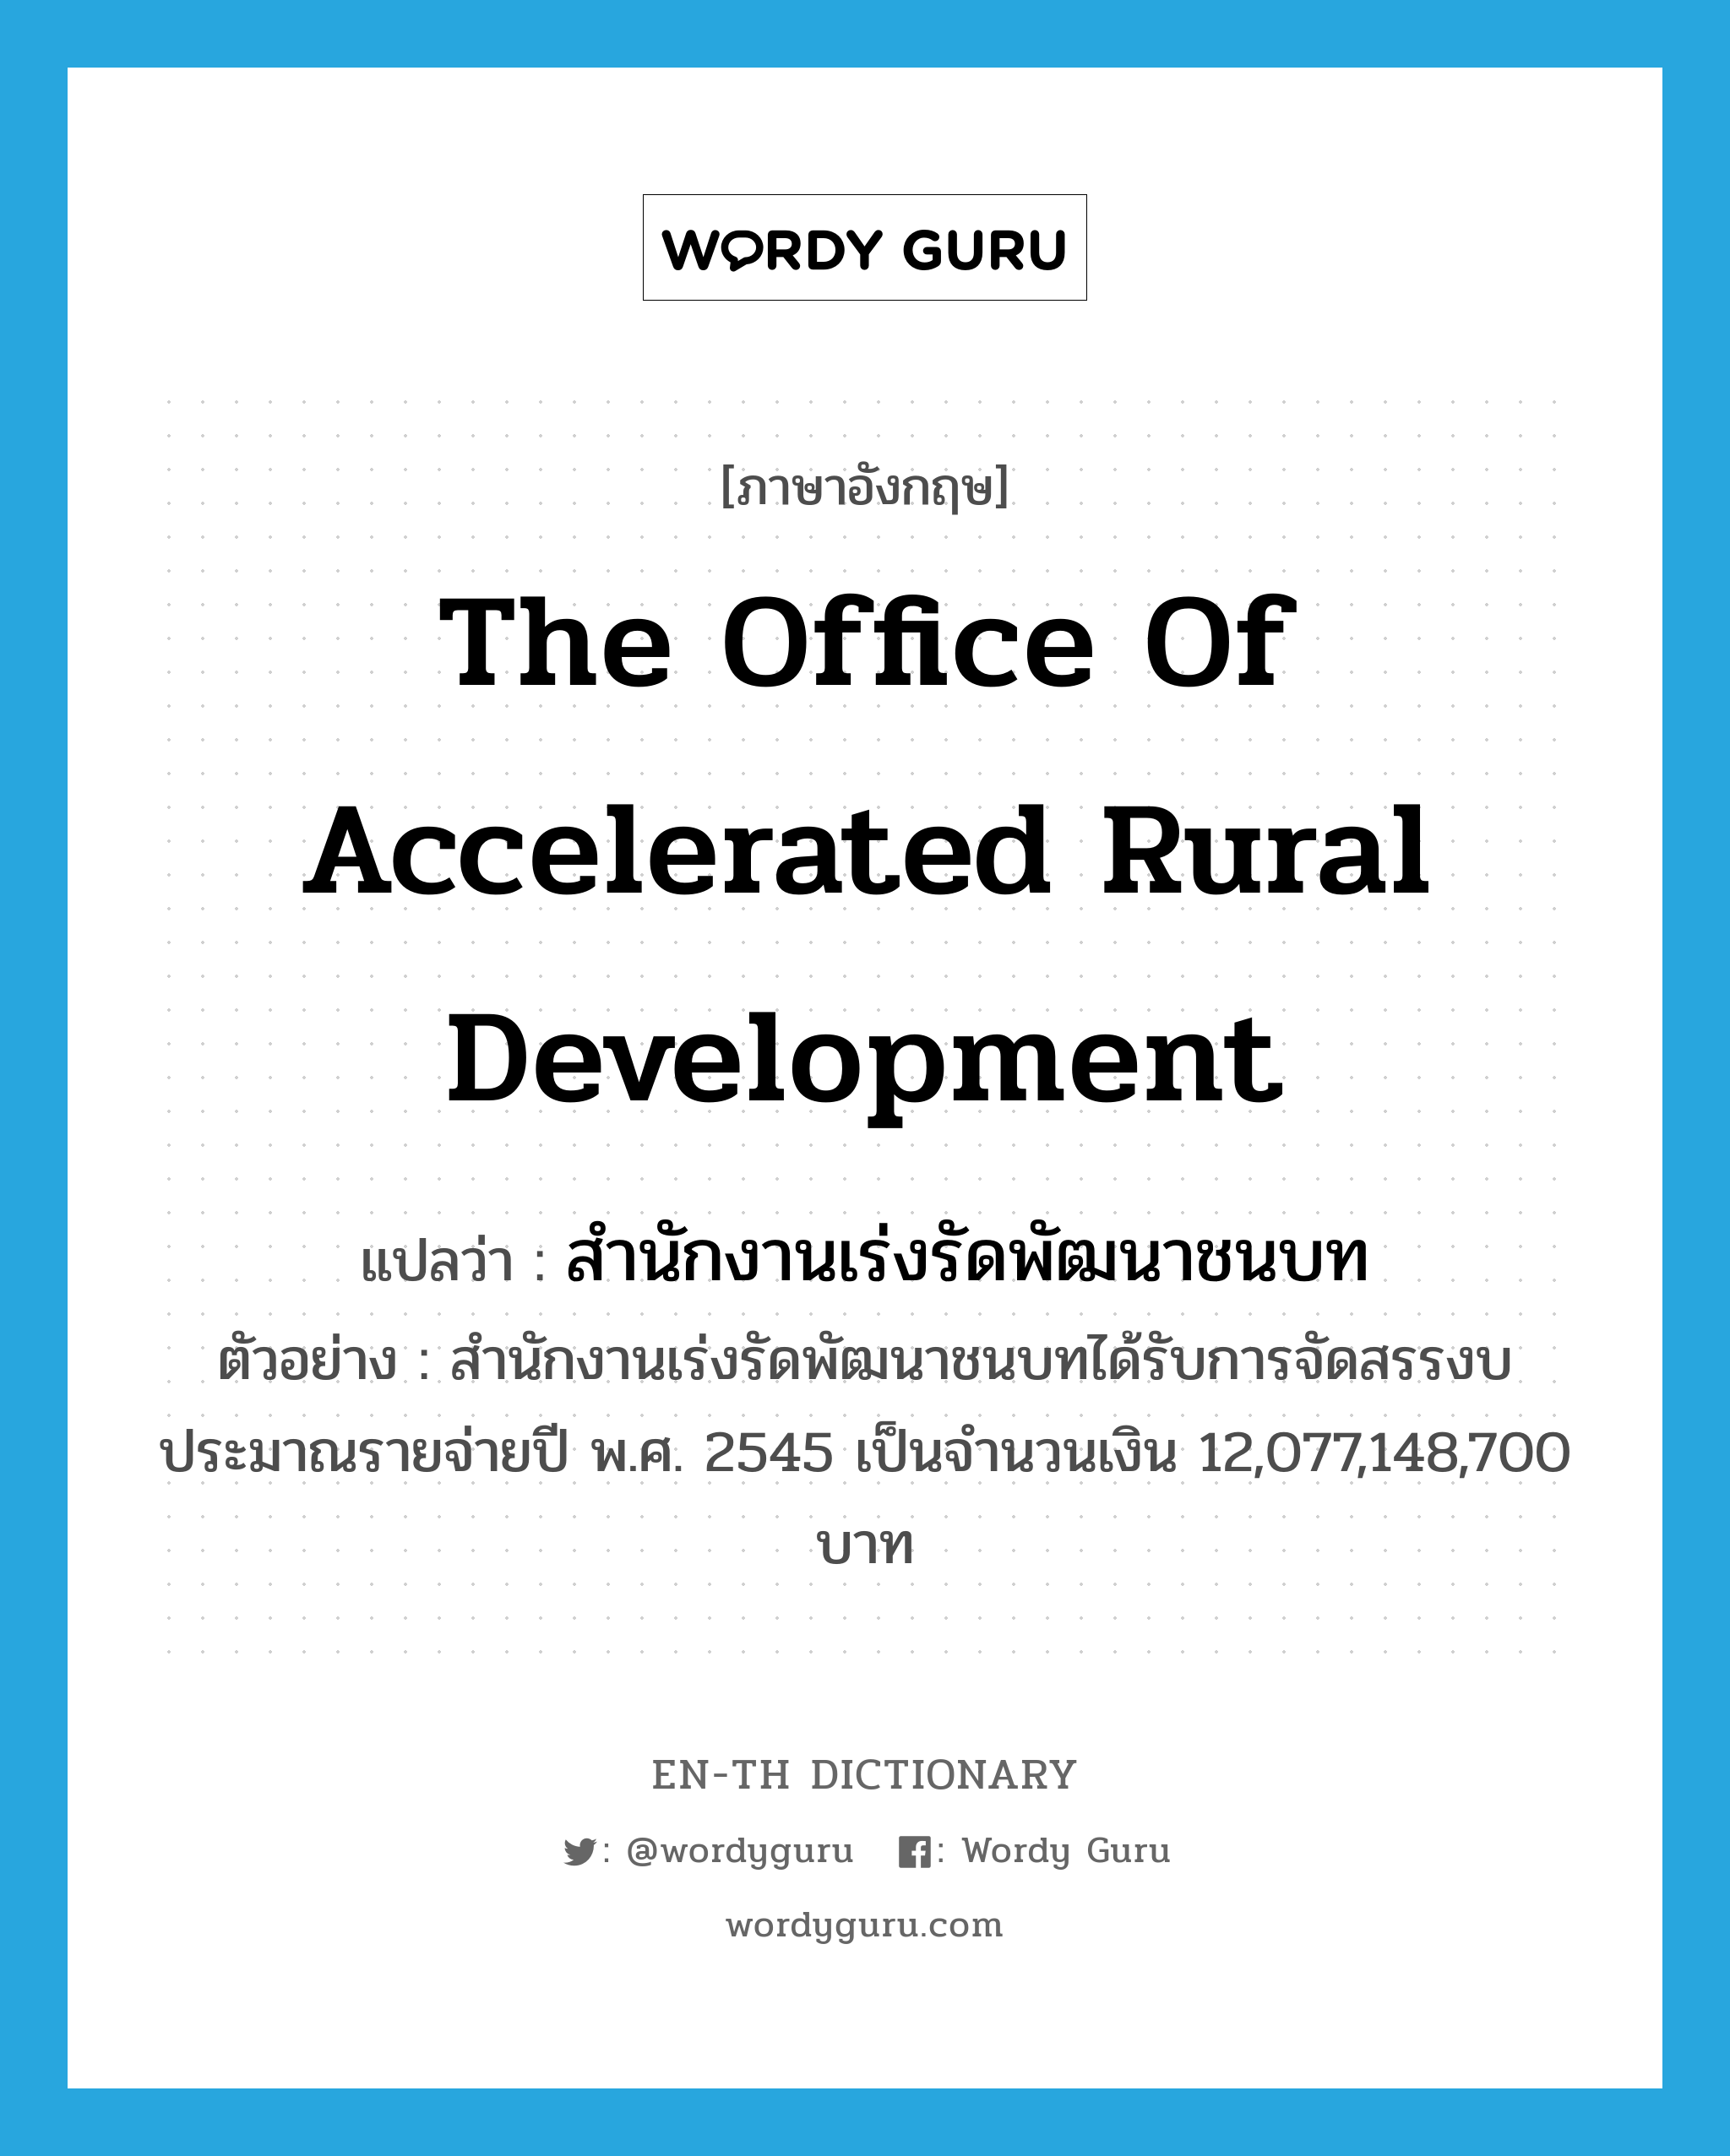 สำนักงานเร่งรัดพัฒนาชนบท ภาษาอังกฤษ?, คำศัพท์ภาษาอังกฤษ สำนักงานเร่งรัดพัฒนาชนบท แปลว่า the Office of Accelerated Rural Development ประเภท N ตัวอย่าง สำนักงานเร่งรัดพัฒนาชนบทได้รับการจัดสรรงบประมาณรายจ่ายปี พ.ศ. 2545 เป็นจำนวนเงิน 12,077,148,700 บาท หมวด N